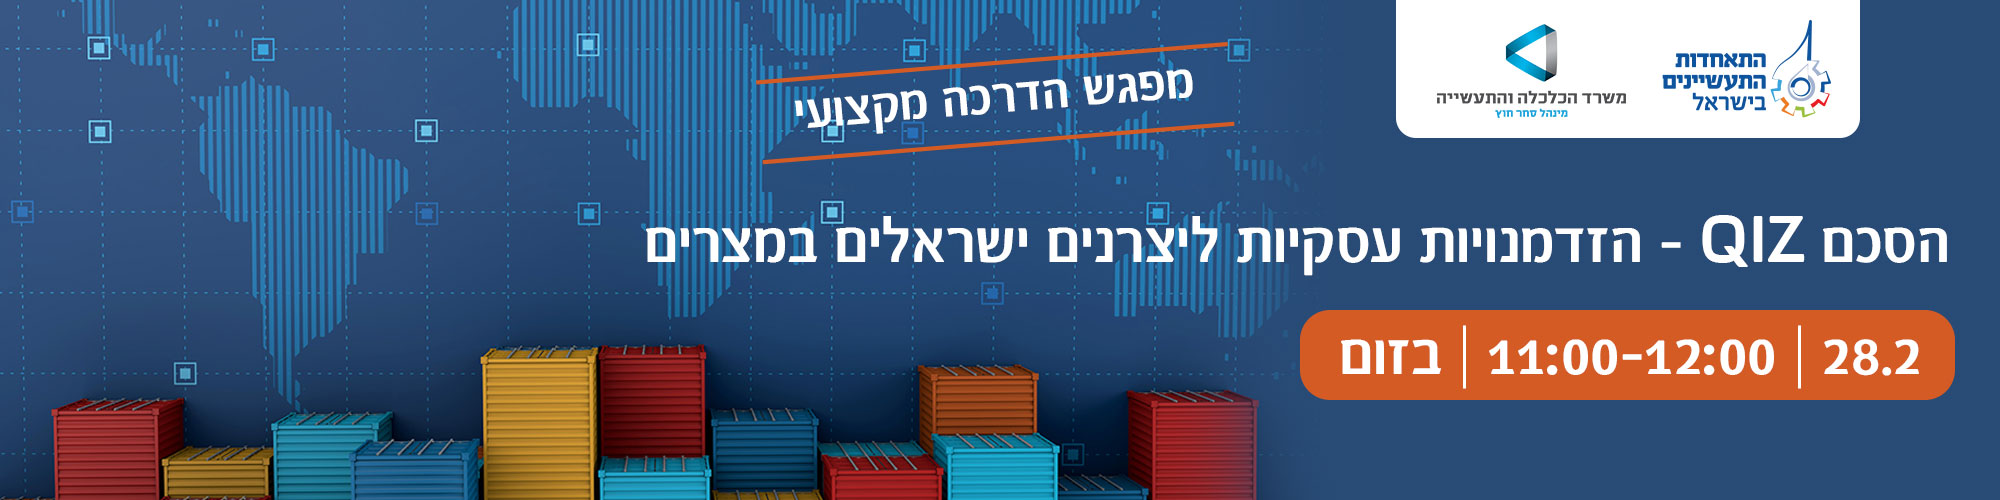 הסכם QIZ - הזדמנויות עסקיות ליצרנים ישראלים במצרים